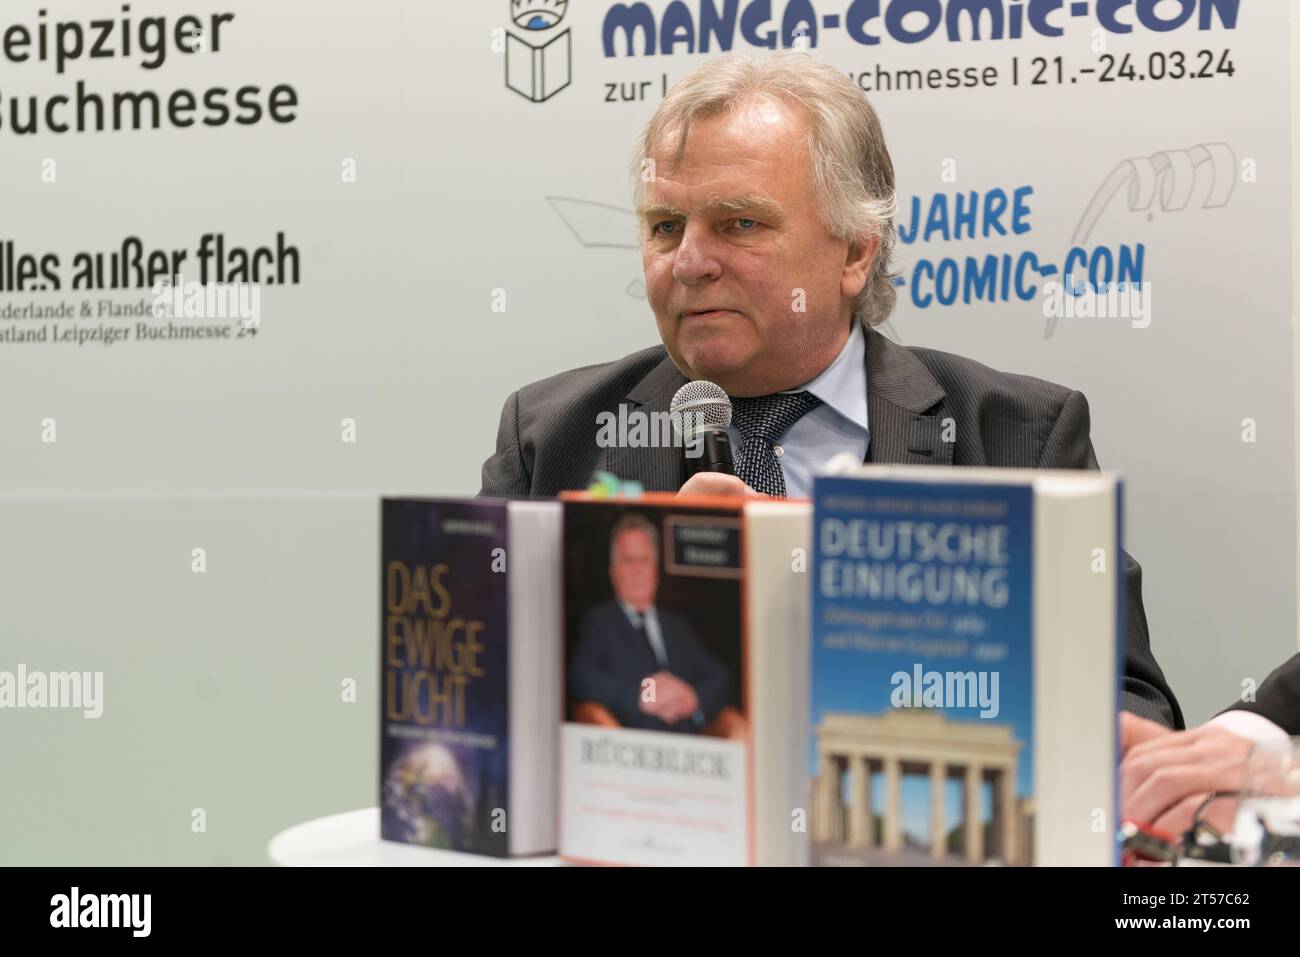 FRANCOFORTE SUL MENO, Germania - 22 ottobre 2023: Günther Krause (*1953, tedesco accademico, ingegnere, politico e uomo d'affari) parla sul palco della 75a Fiera del Libro di Francoforte / Buchmesse Frankfurt Foto Stock